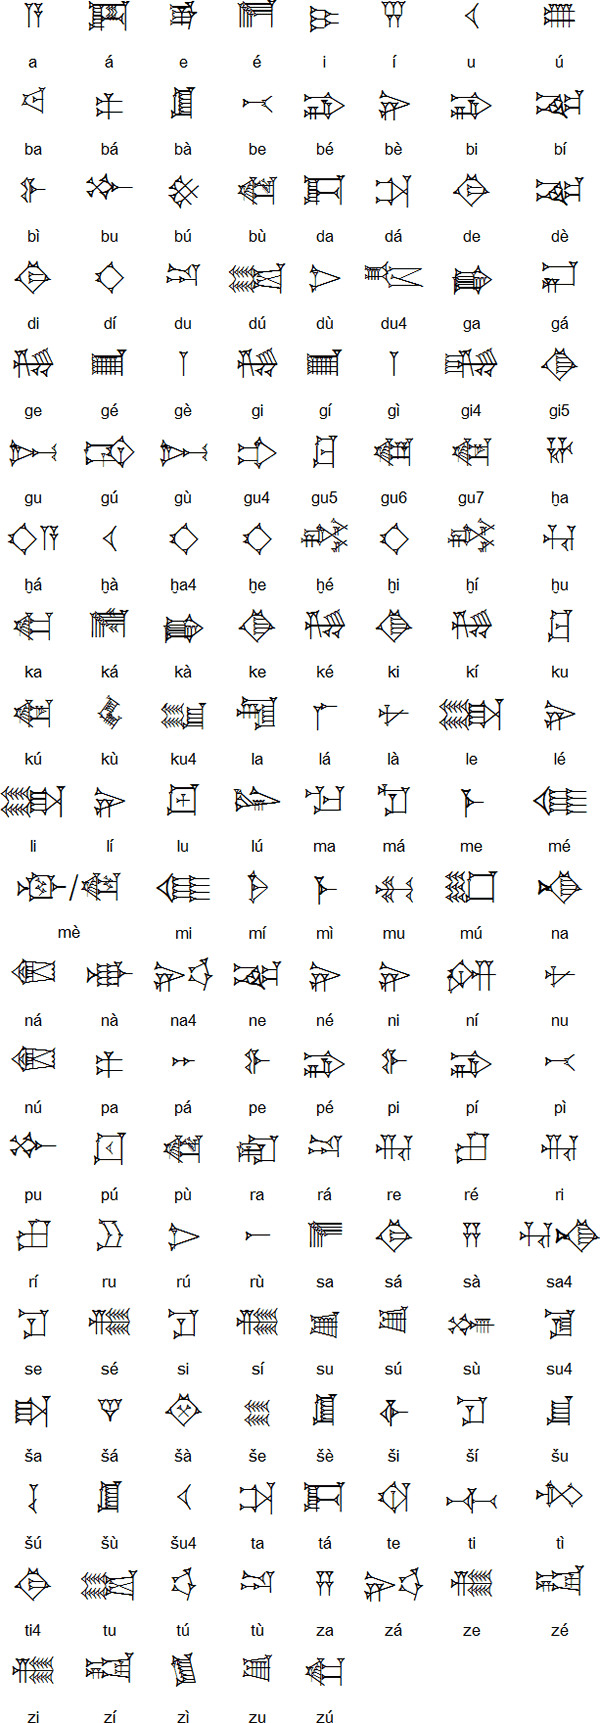 Hieroglyphs clipart cuneiform